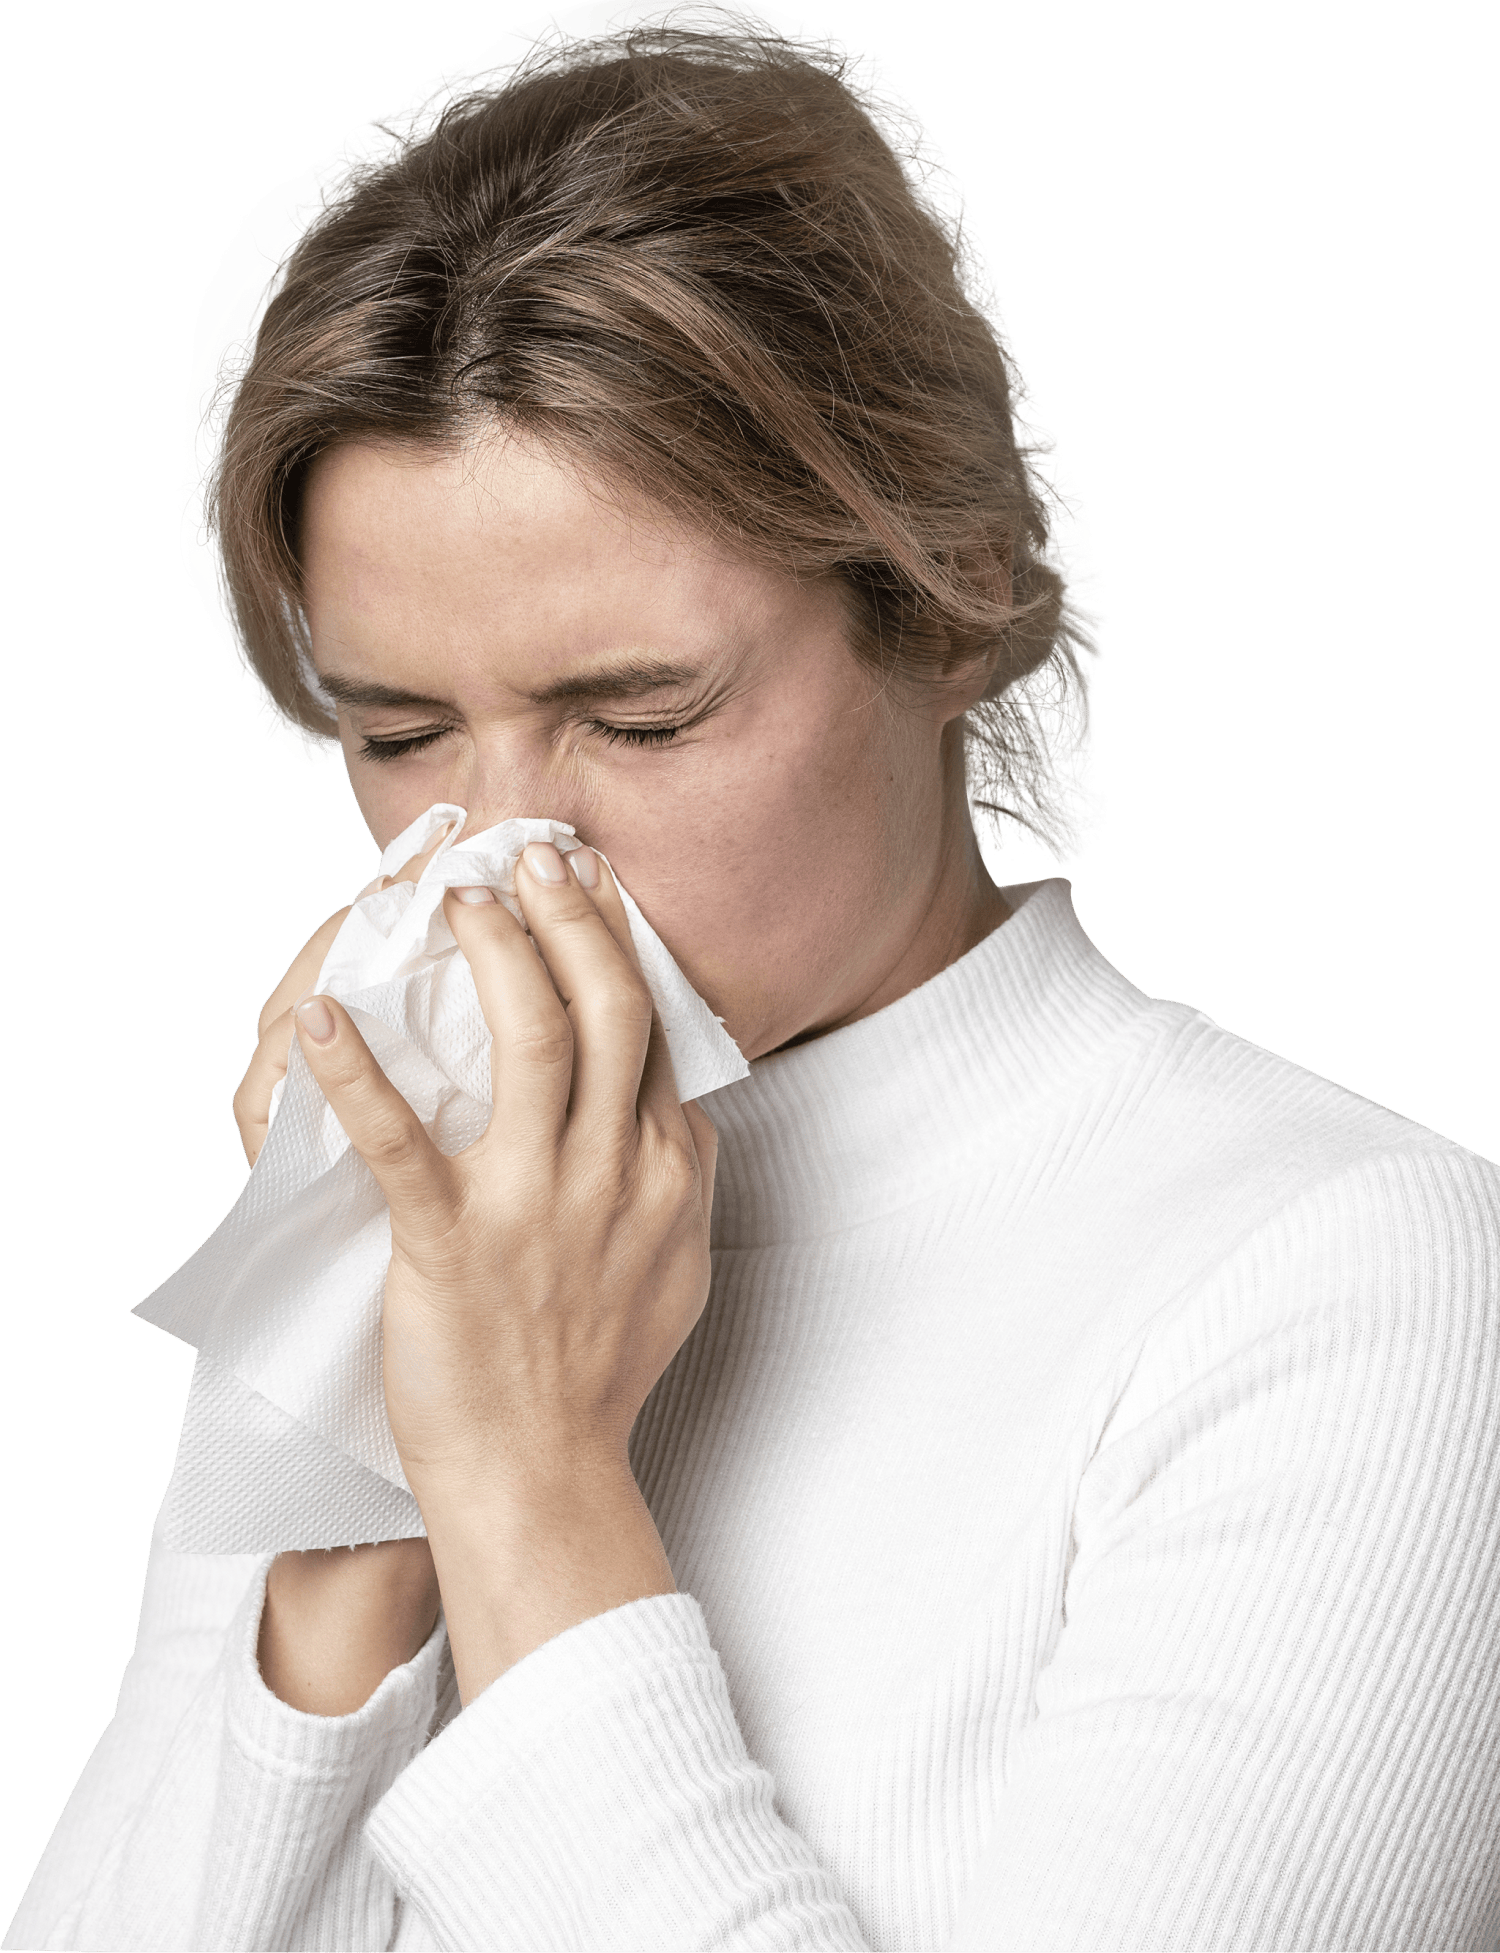 Простуда: симптомы, лечение в домашних условиях, профилактика - FitoBlog